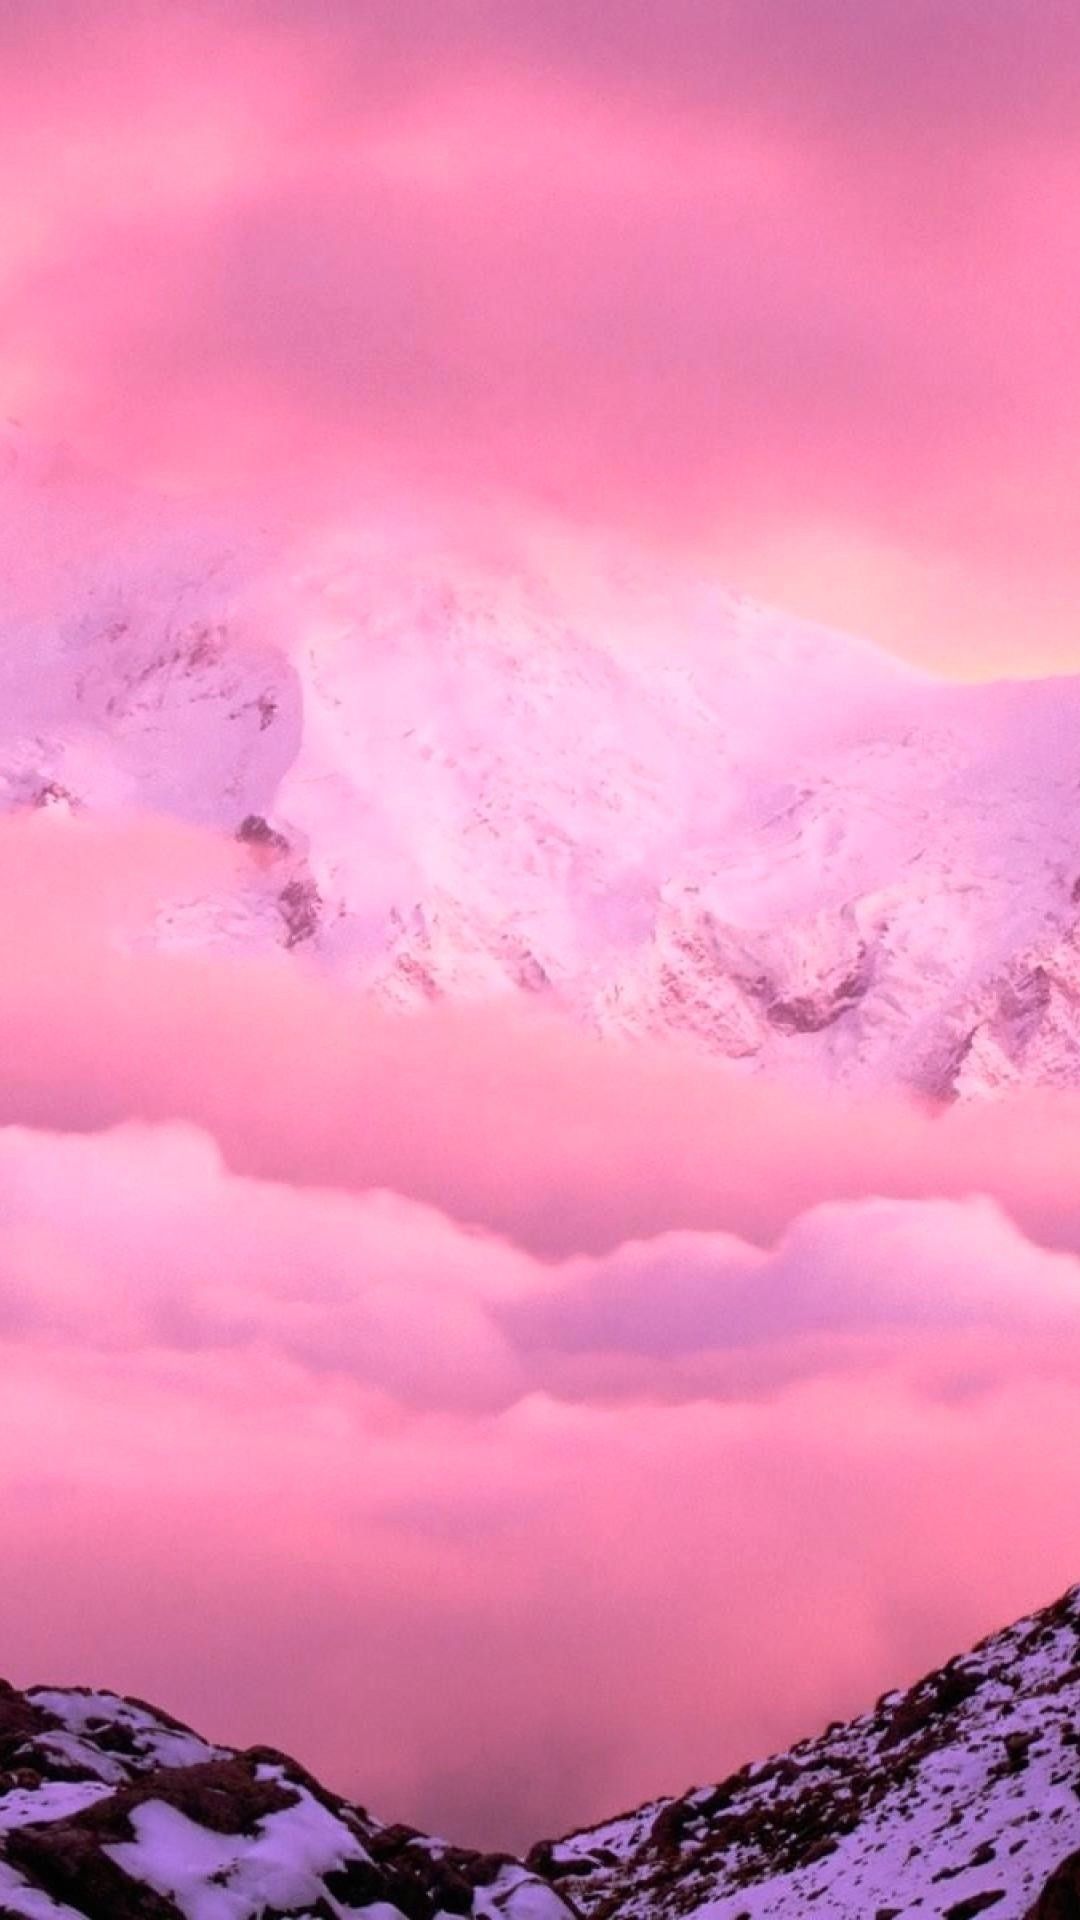 Bạn đang tìm kiếm một hình nền màu hồng đích thực cho chiếc iPhone 4k của bạn? Thì hãy không bỏ qua bộ sưu tập Pink 4k iPhone Wallpapers trên trang web Wallpaper Cave. Bộ sưu tập này mang đến cho bạn nhiều sự lựa chọn để tận hưởng vẻ đẹp huyền diệu và nữ tính của màu hồng.